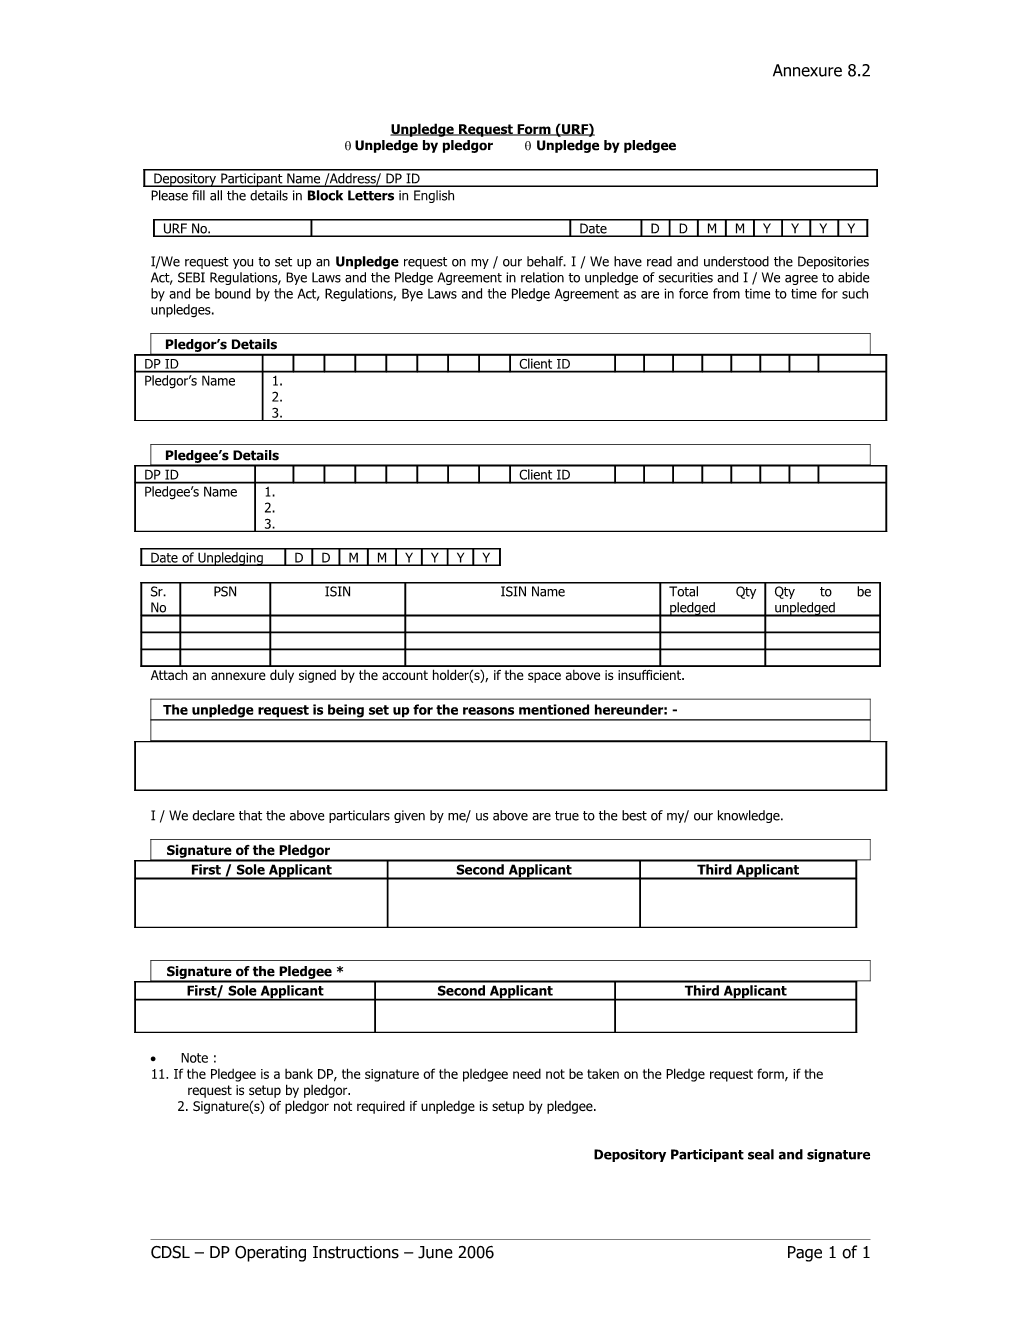 Annexure 8.2 : Unpledge Request Form